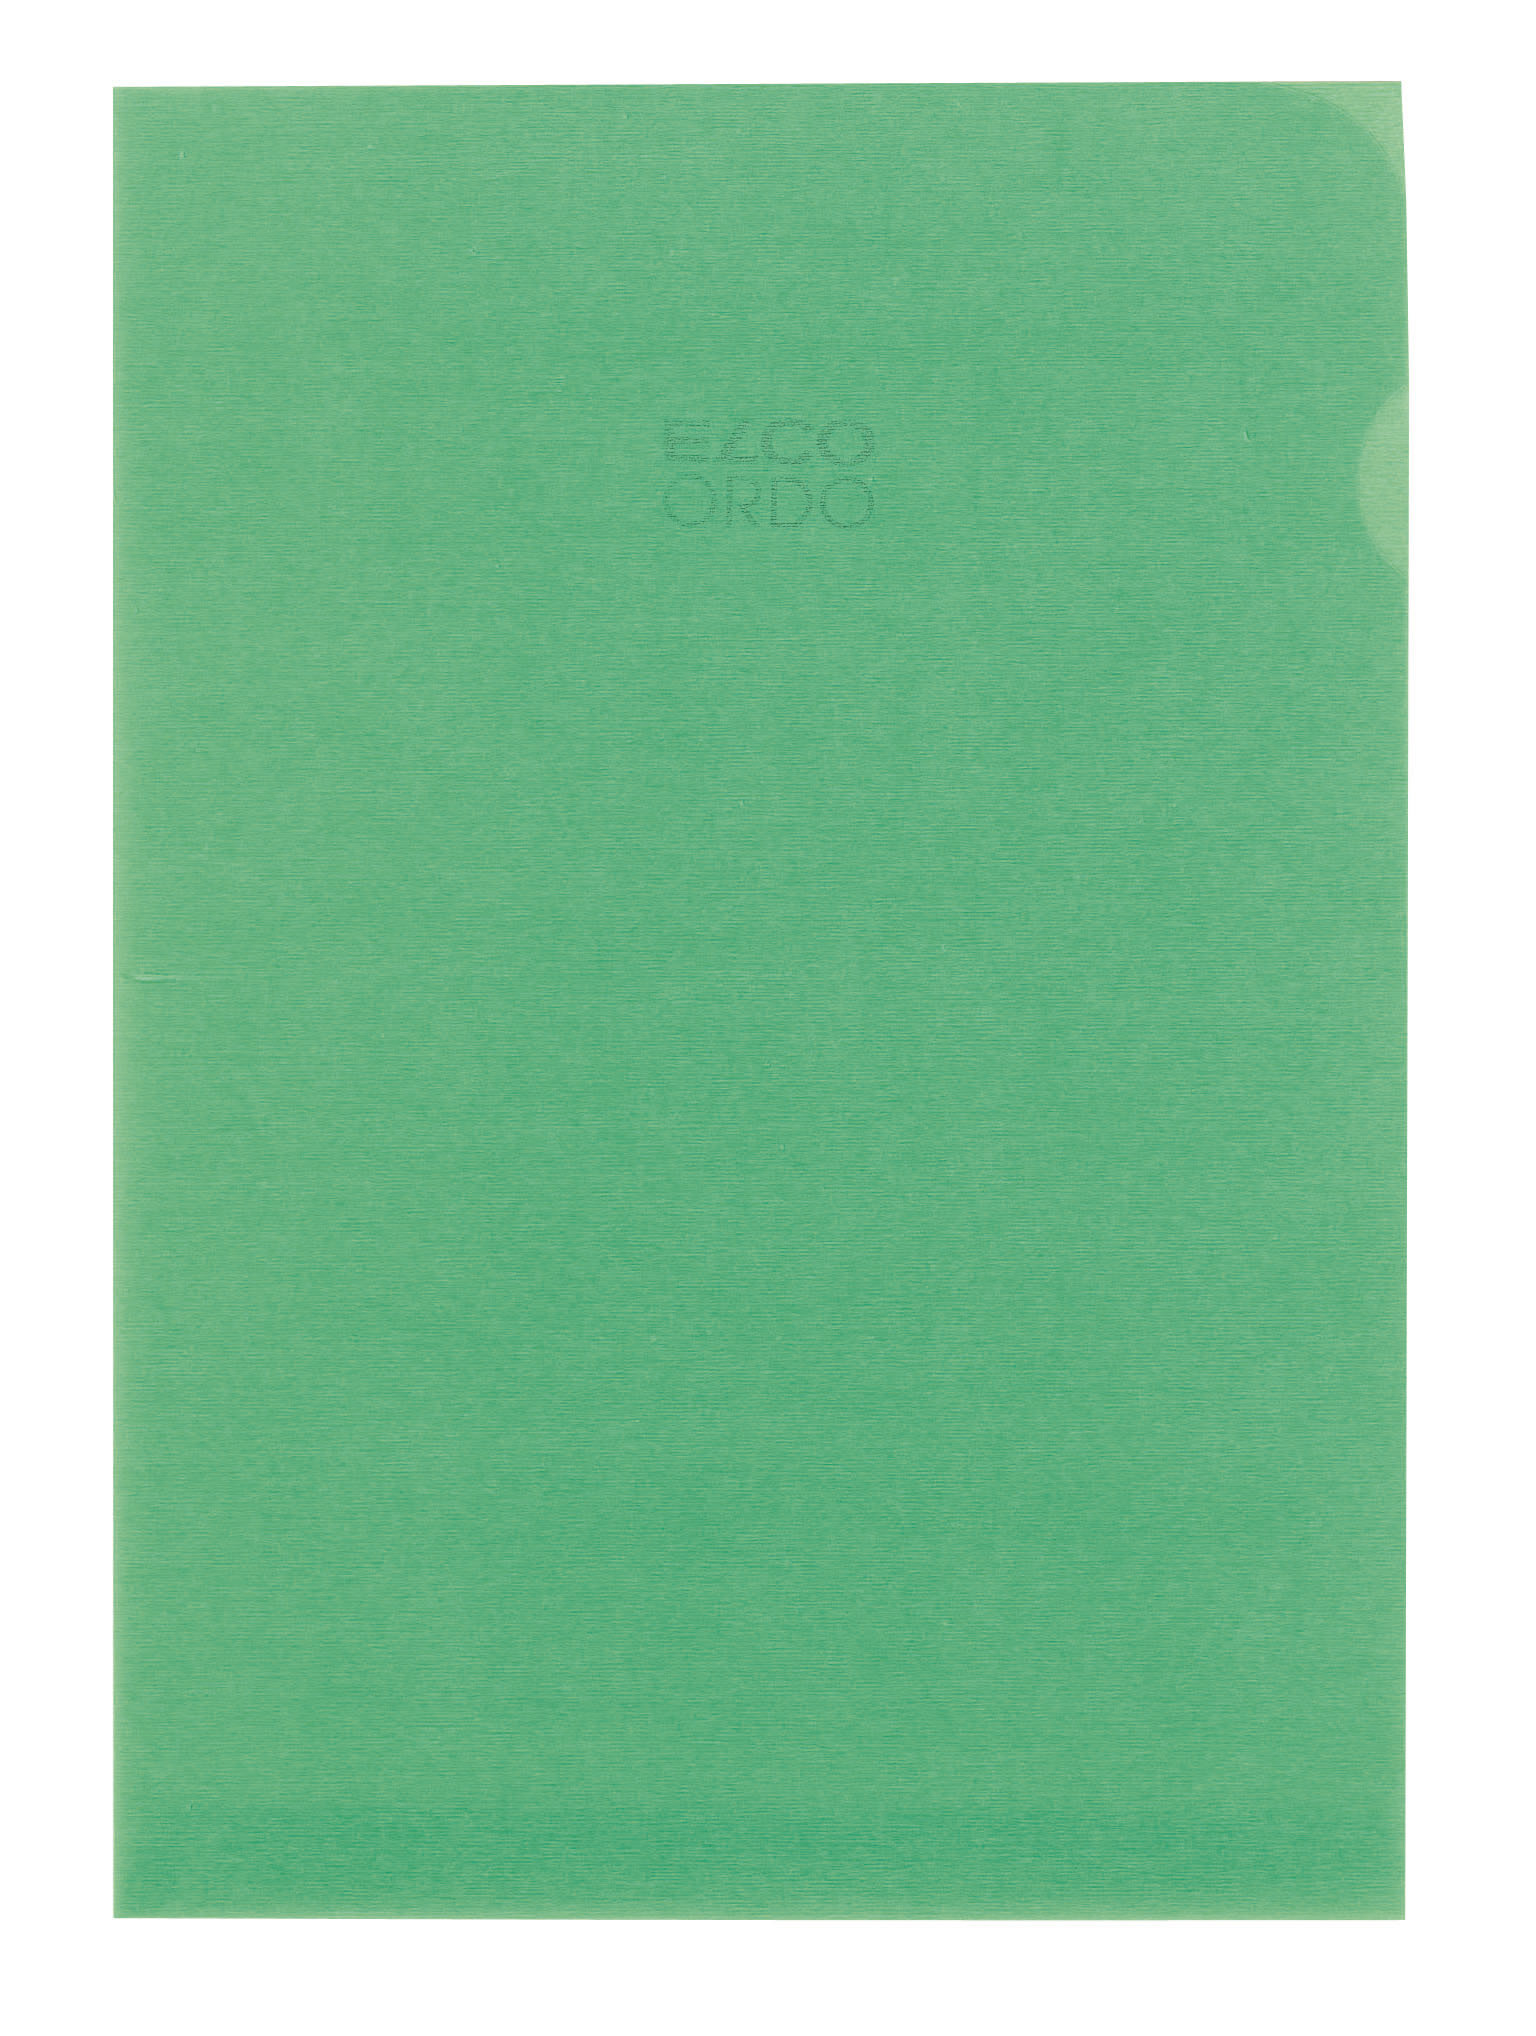 ELCO Sichthülle Ordo A4 29490.64 transparent, grün 100 Stück